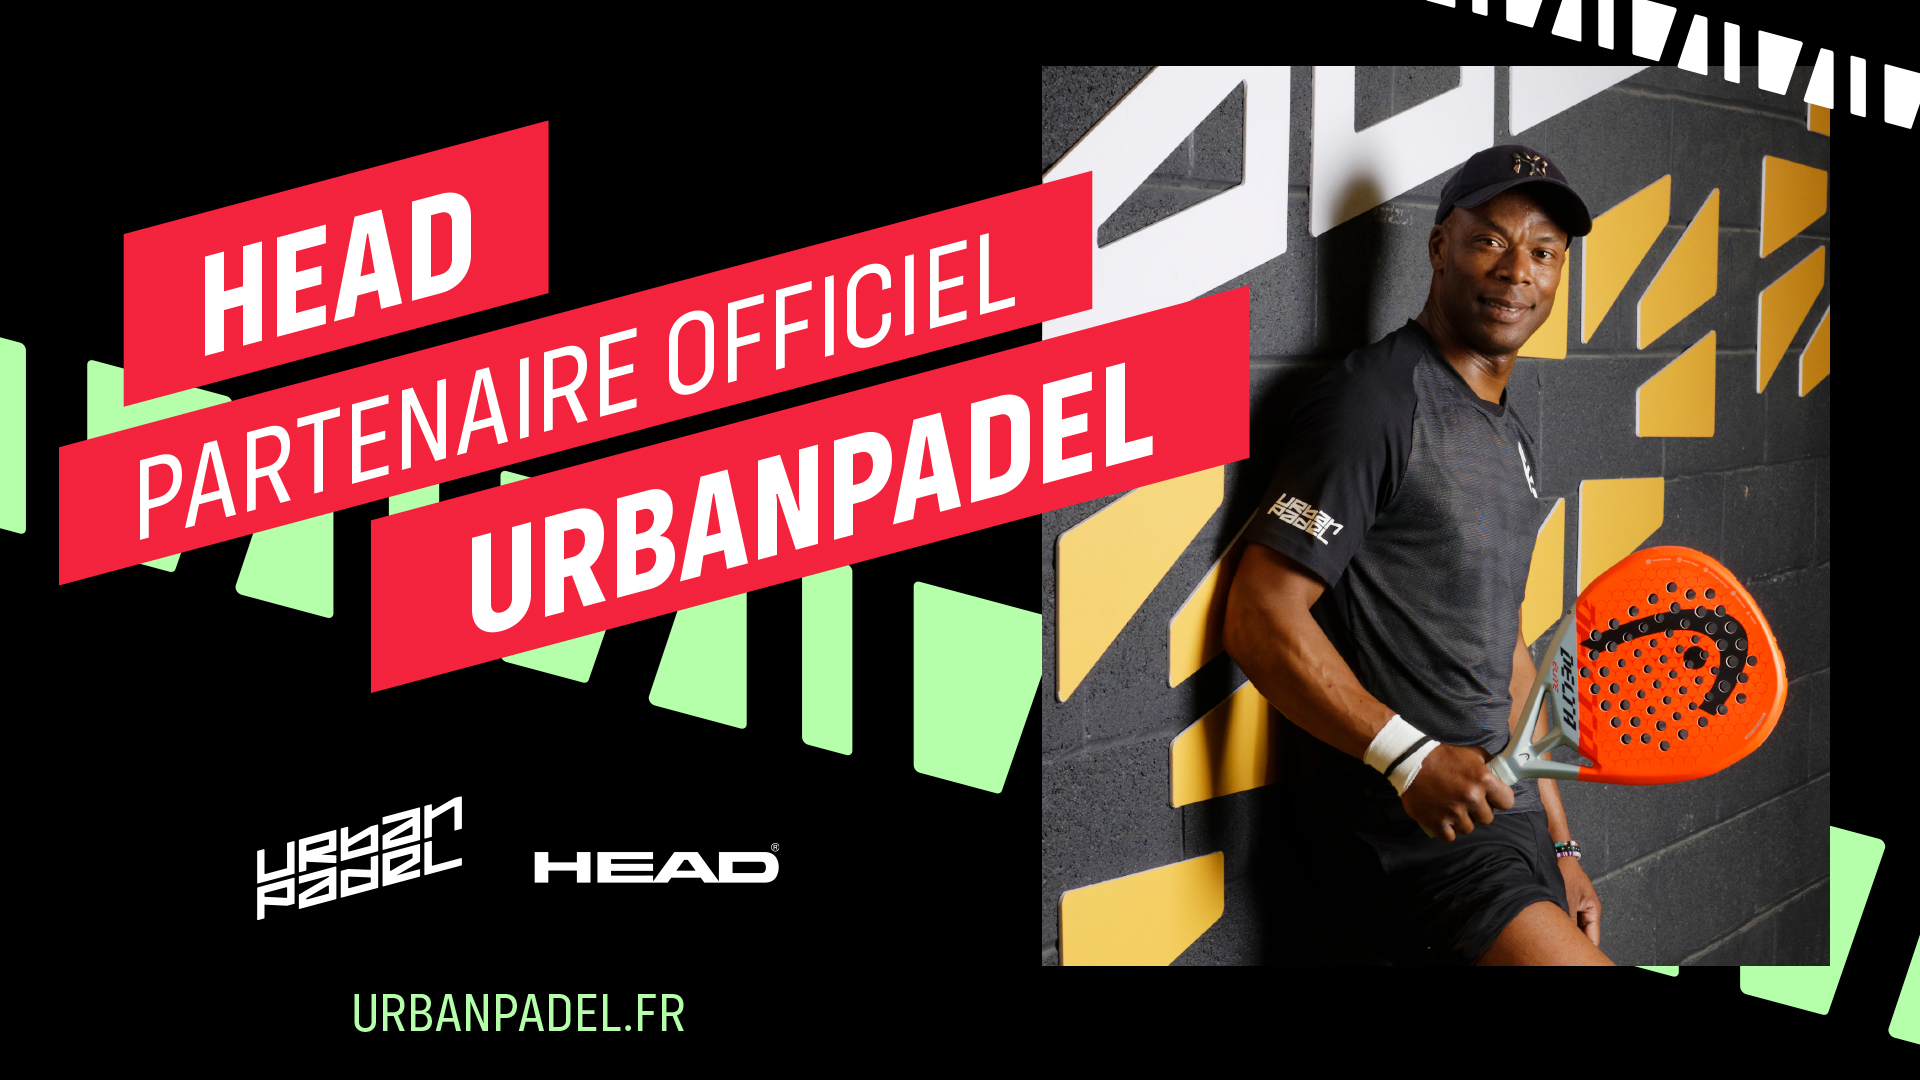 HEAD en UrbanPadel hun samenwerking uitbreiden en intensiveren